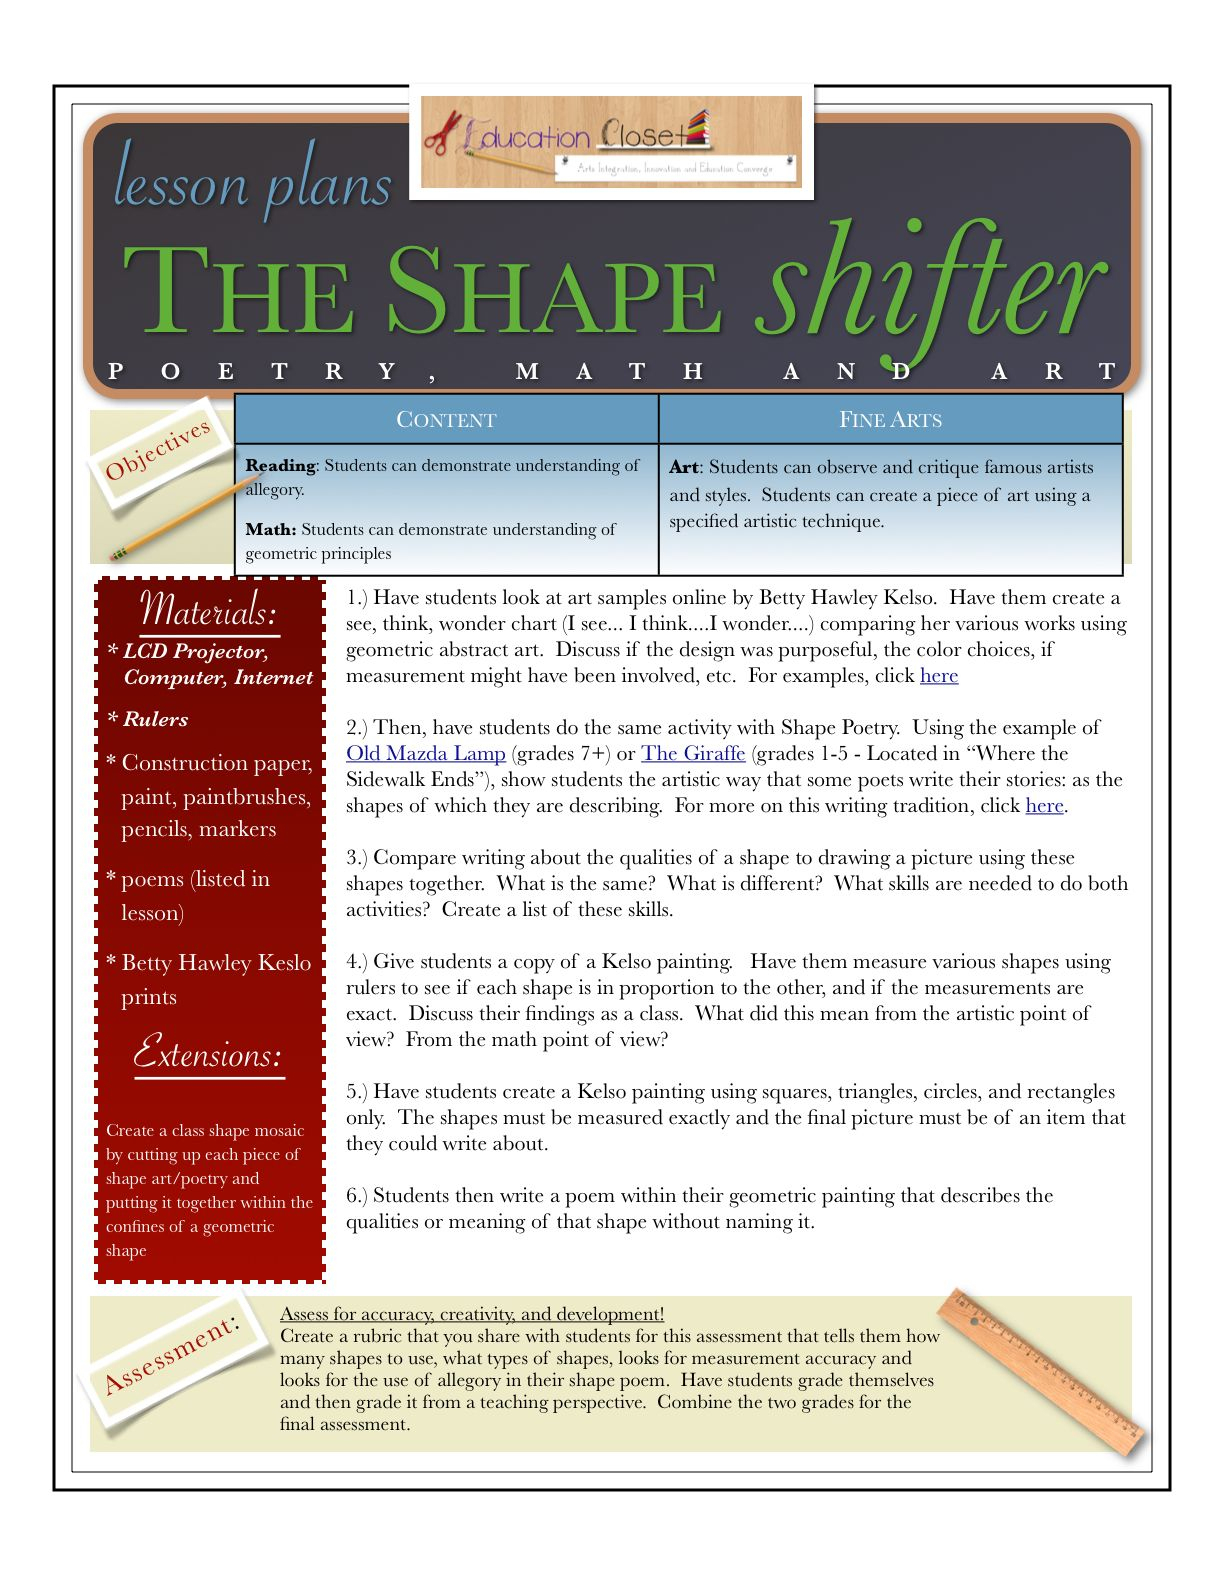 Arts Integration Lesson Plan: Shape Shifter | Lesson Plans